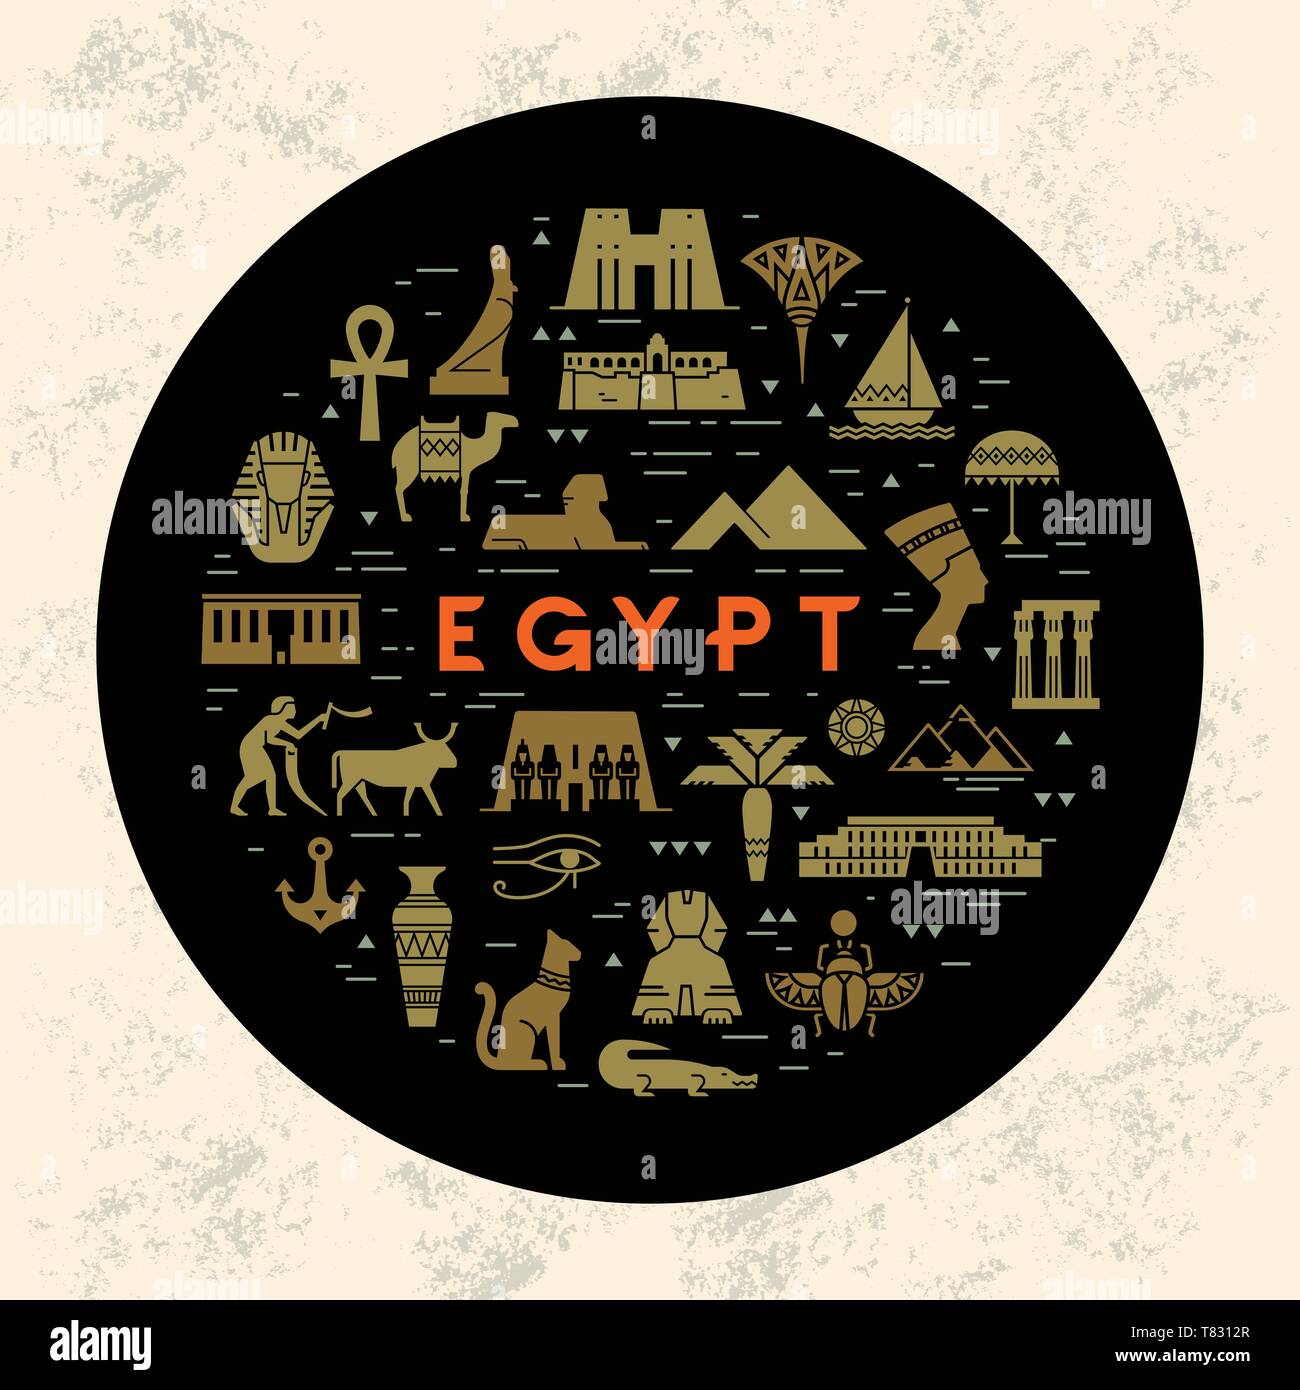 Un modèle de concept design ronde remplie d'icônes sur les sites et les symboles de l'Égypte. Repères et symboles de l'Égypte dans un style plat isolé sur un noir b Illustration de Vecteur